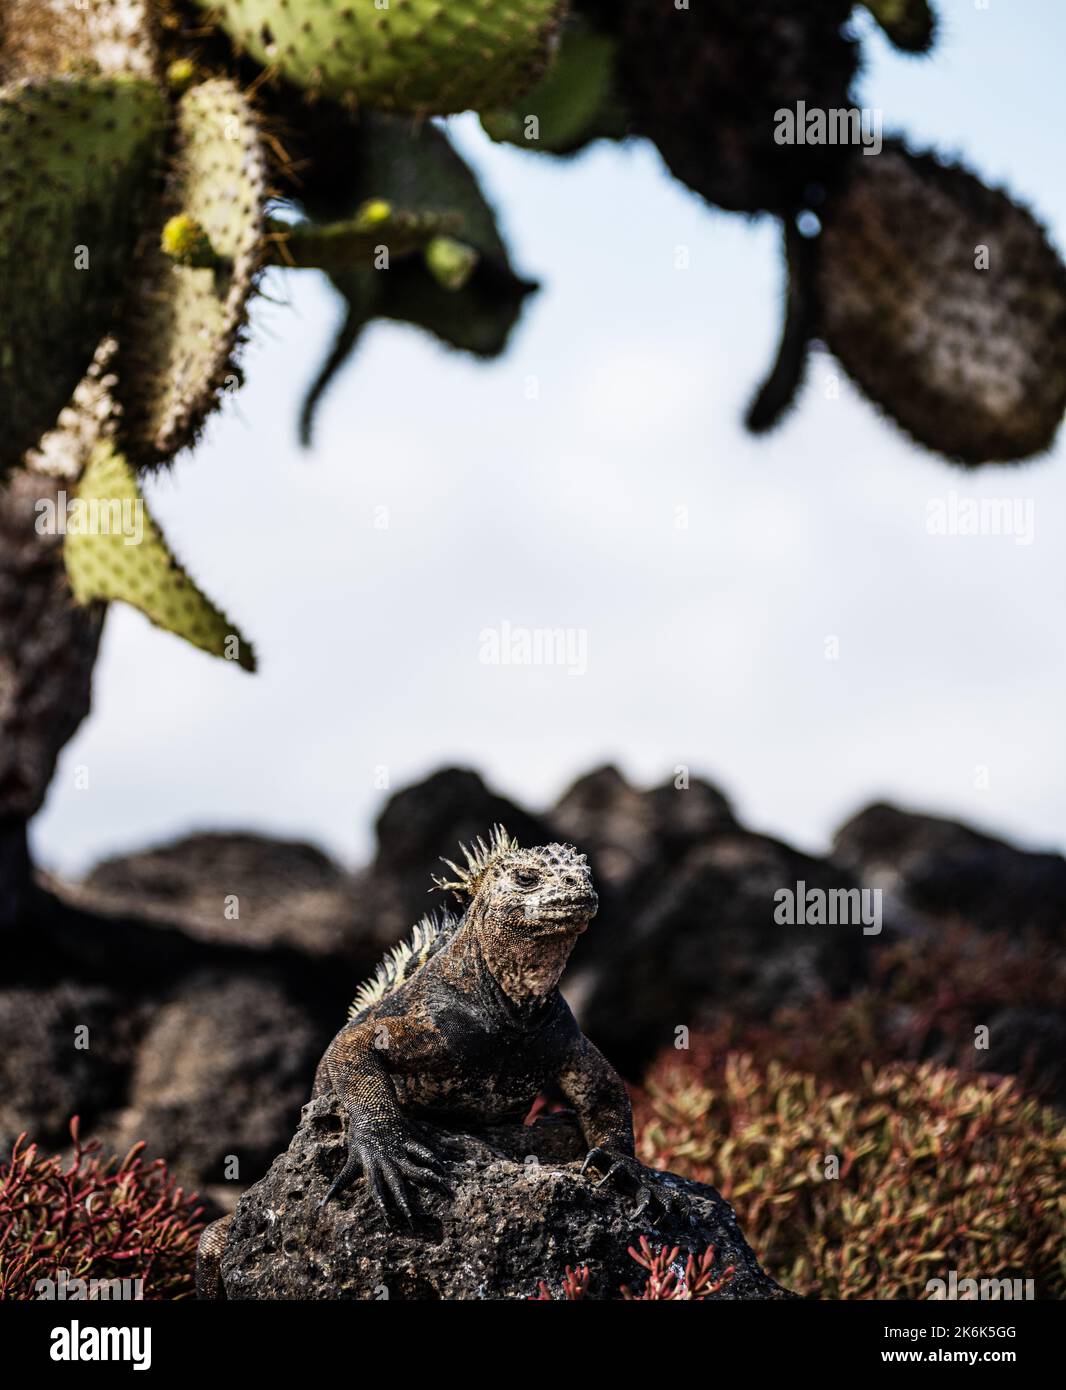 Terre Iguana sur l'île Plaza sous un arbre de cactus de Pear de Prickly, Opuntia echios, sur l'île Plaza, îles Galapagos, Equateur, Amérique du Sud, Galapagos, E Banque D'Images